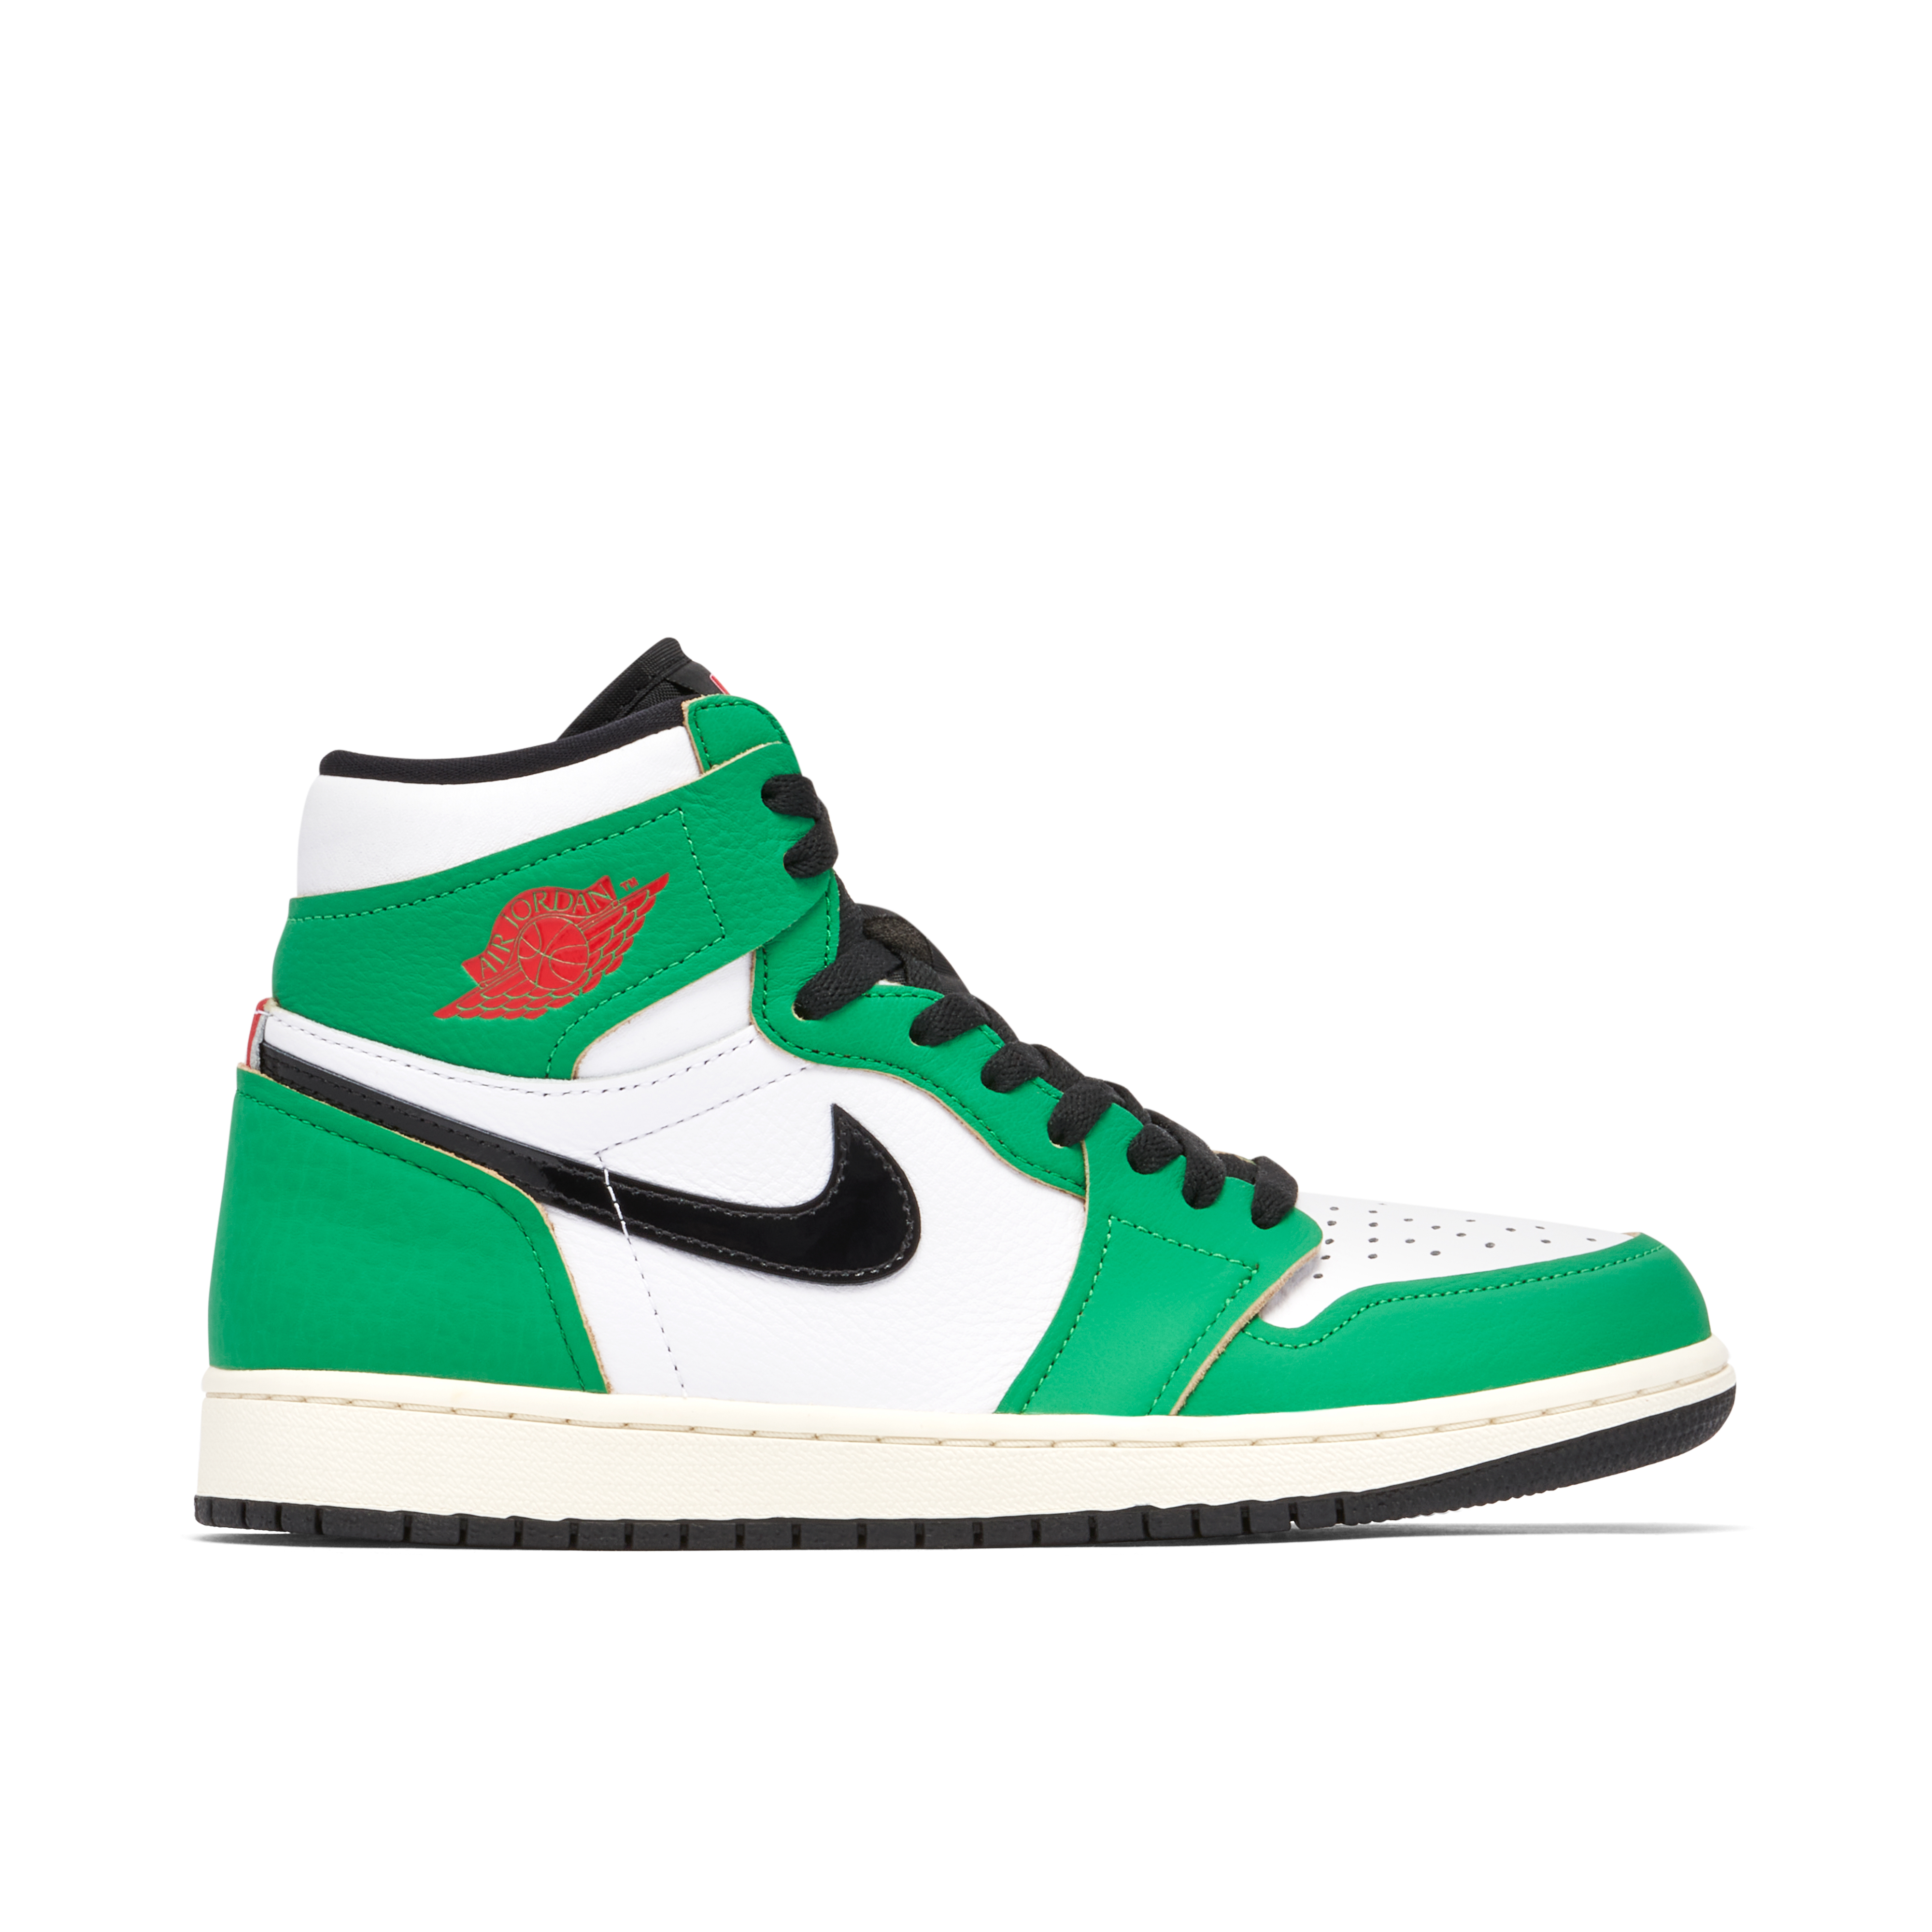 Green Jordans | New Green Air Jordans 